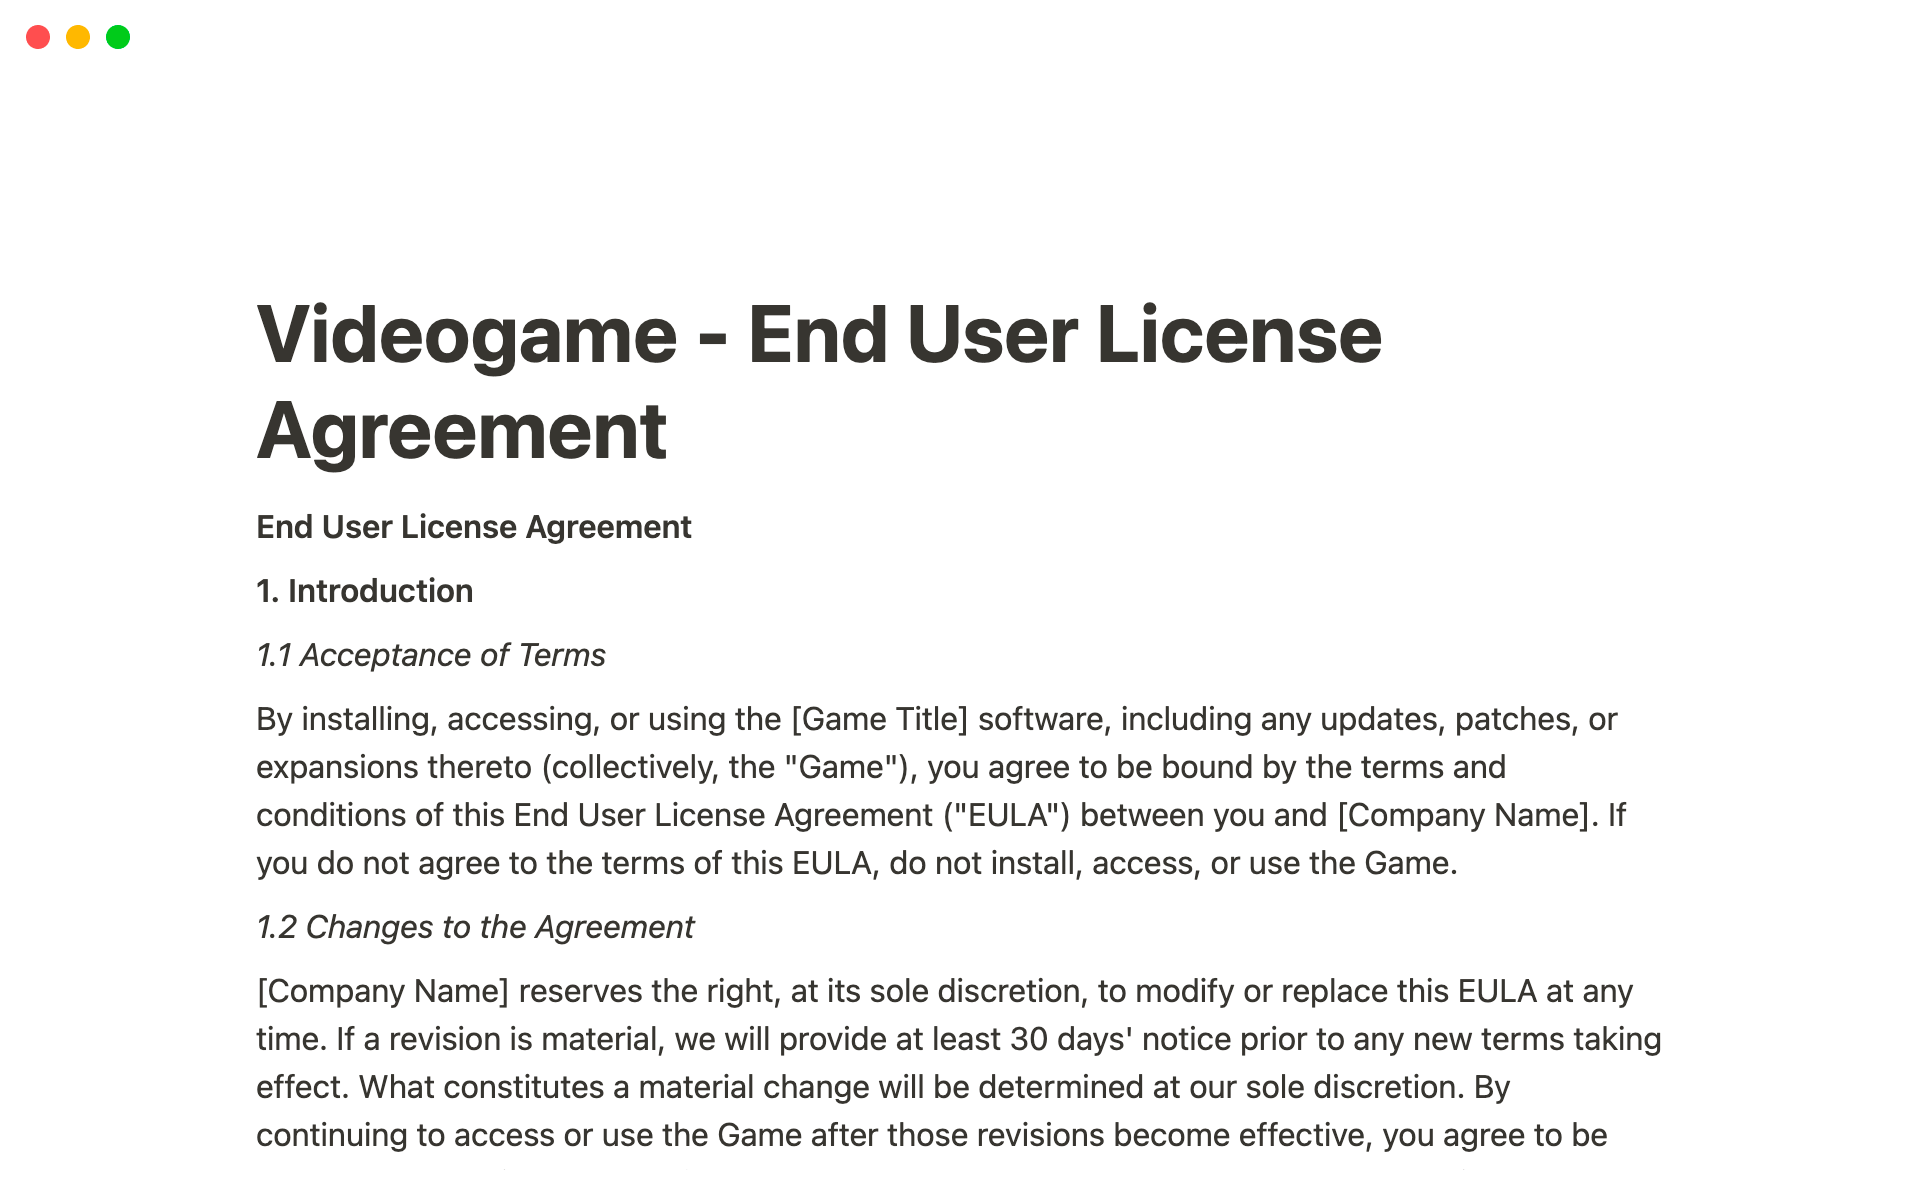 Vista previa de plantilla para Videogame - End User License Agreement